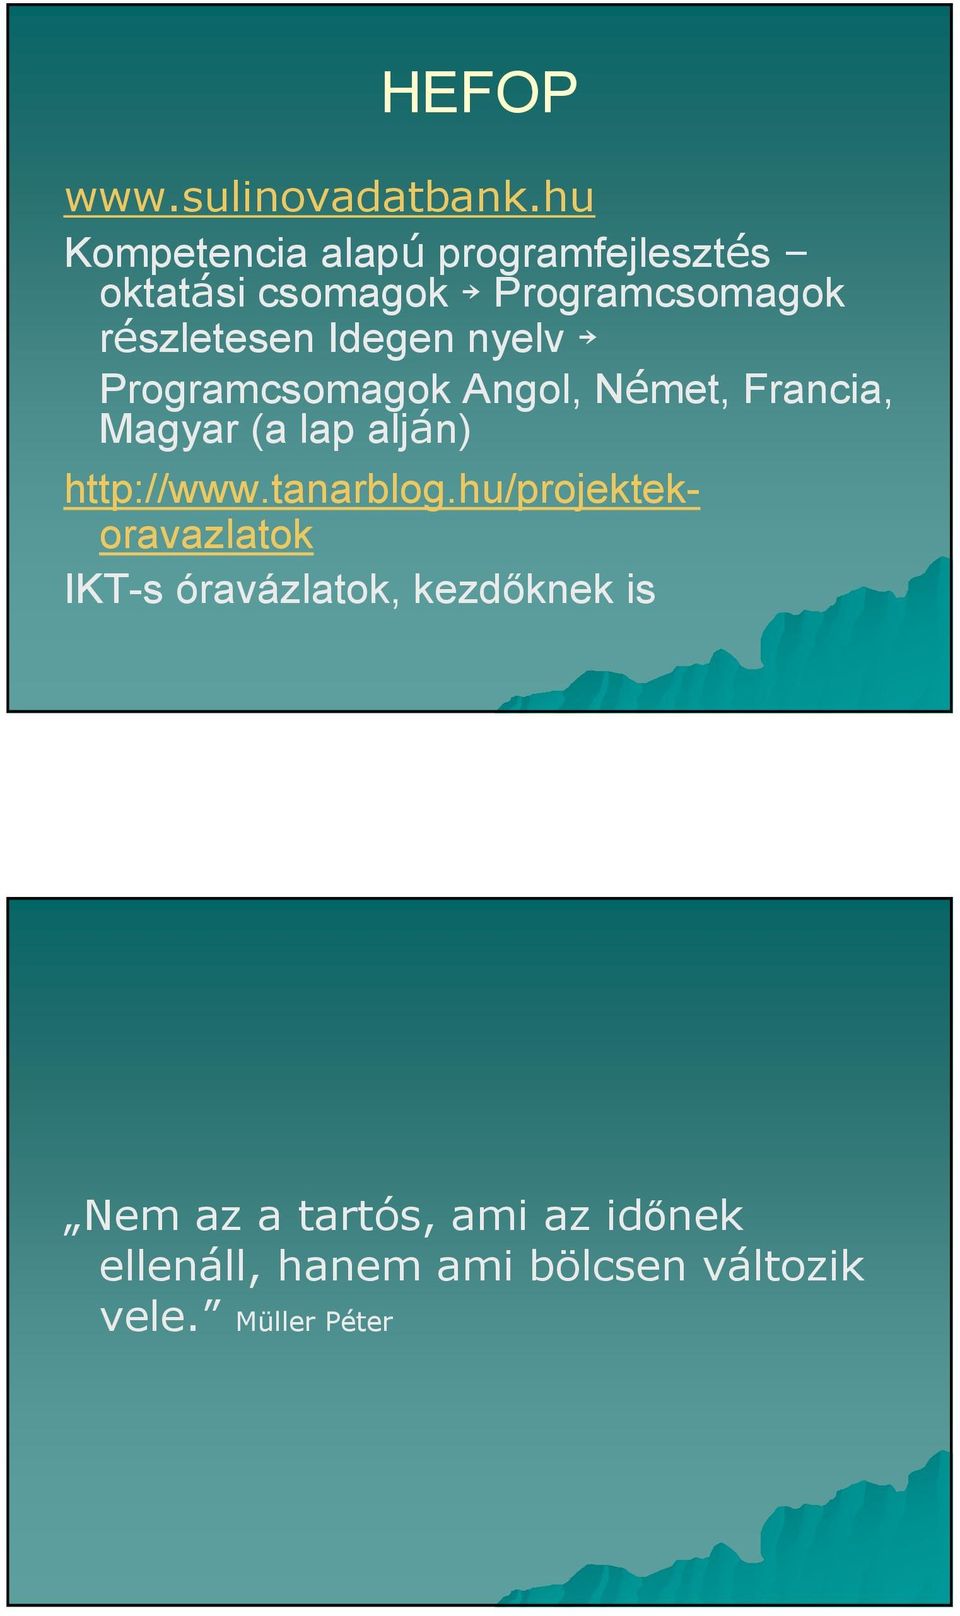 Idegen nyelv Programcsomagok Angol, Német, Francia, Magyar (a lap alján) http://www.